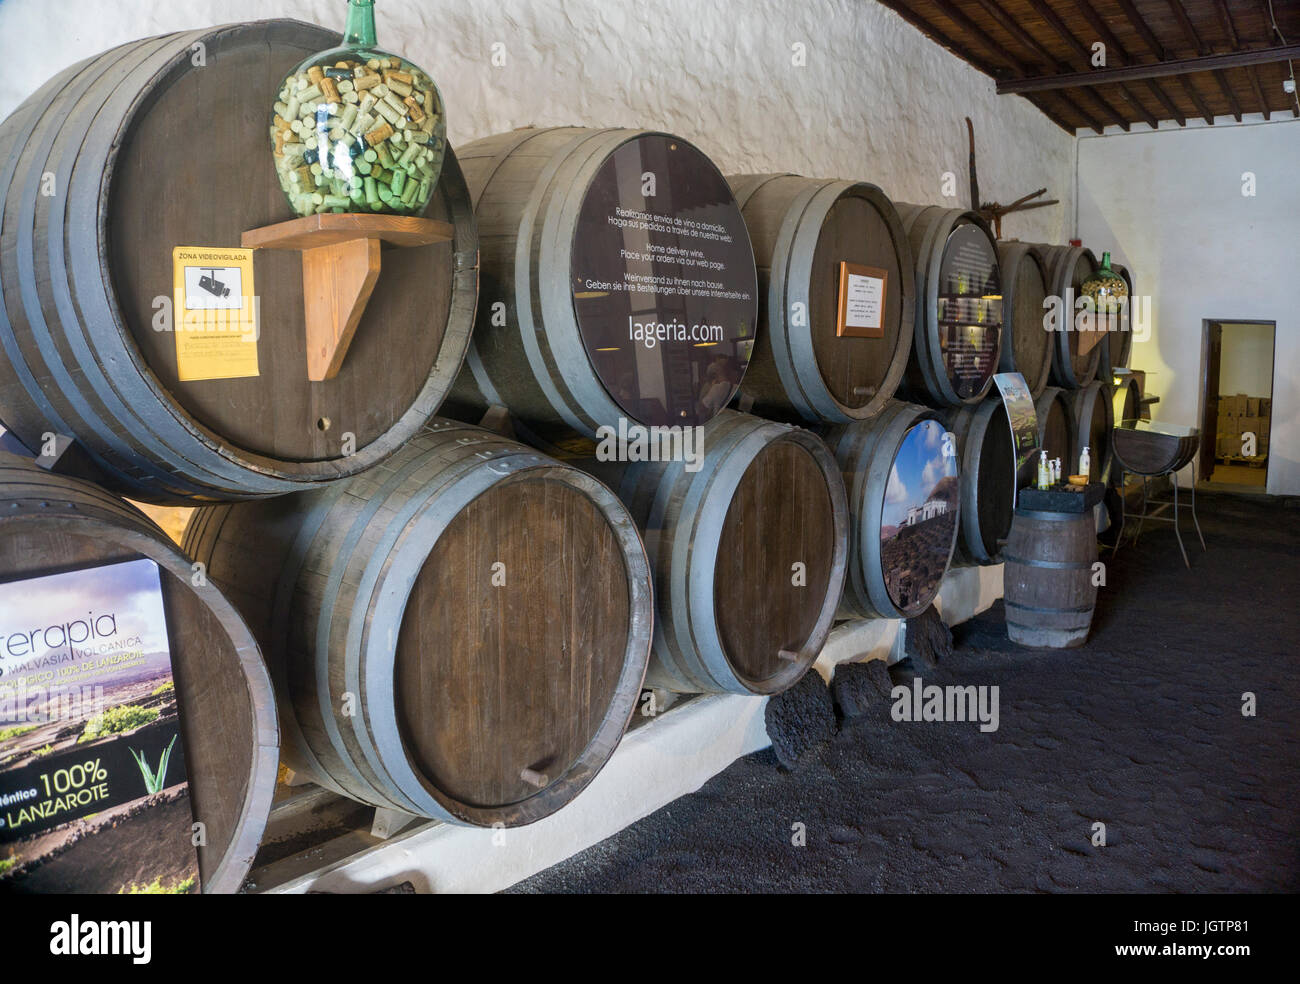 Bodega La Geria, dégustation de vin et de vin pour la vente, La Geria, Lanzarote, îles Canaries, Espagne, Europe Banque D'Images